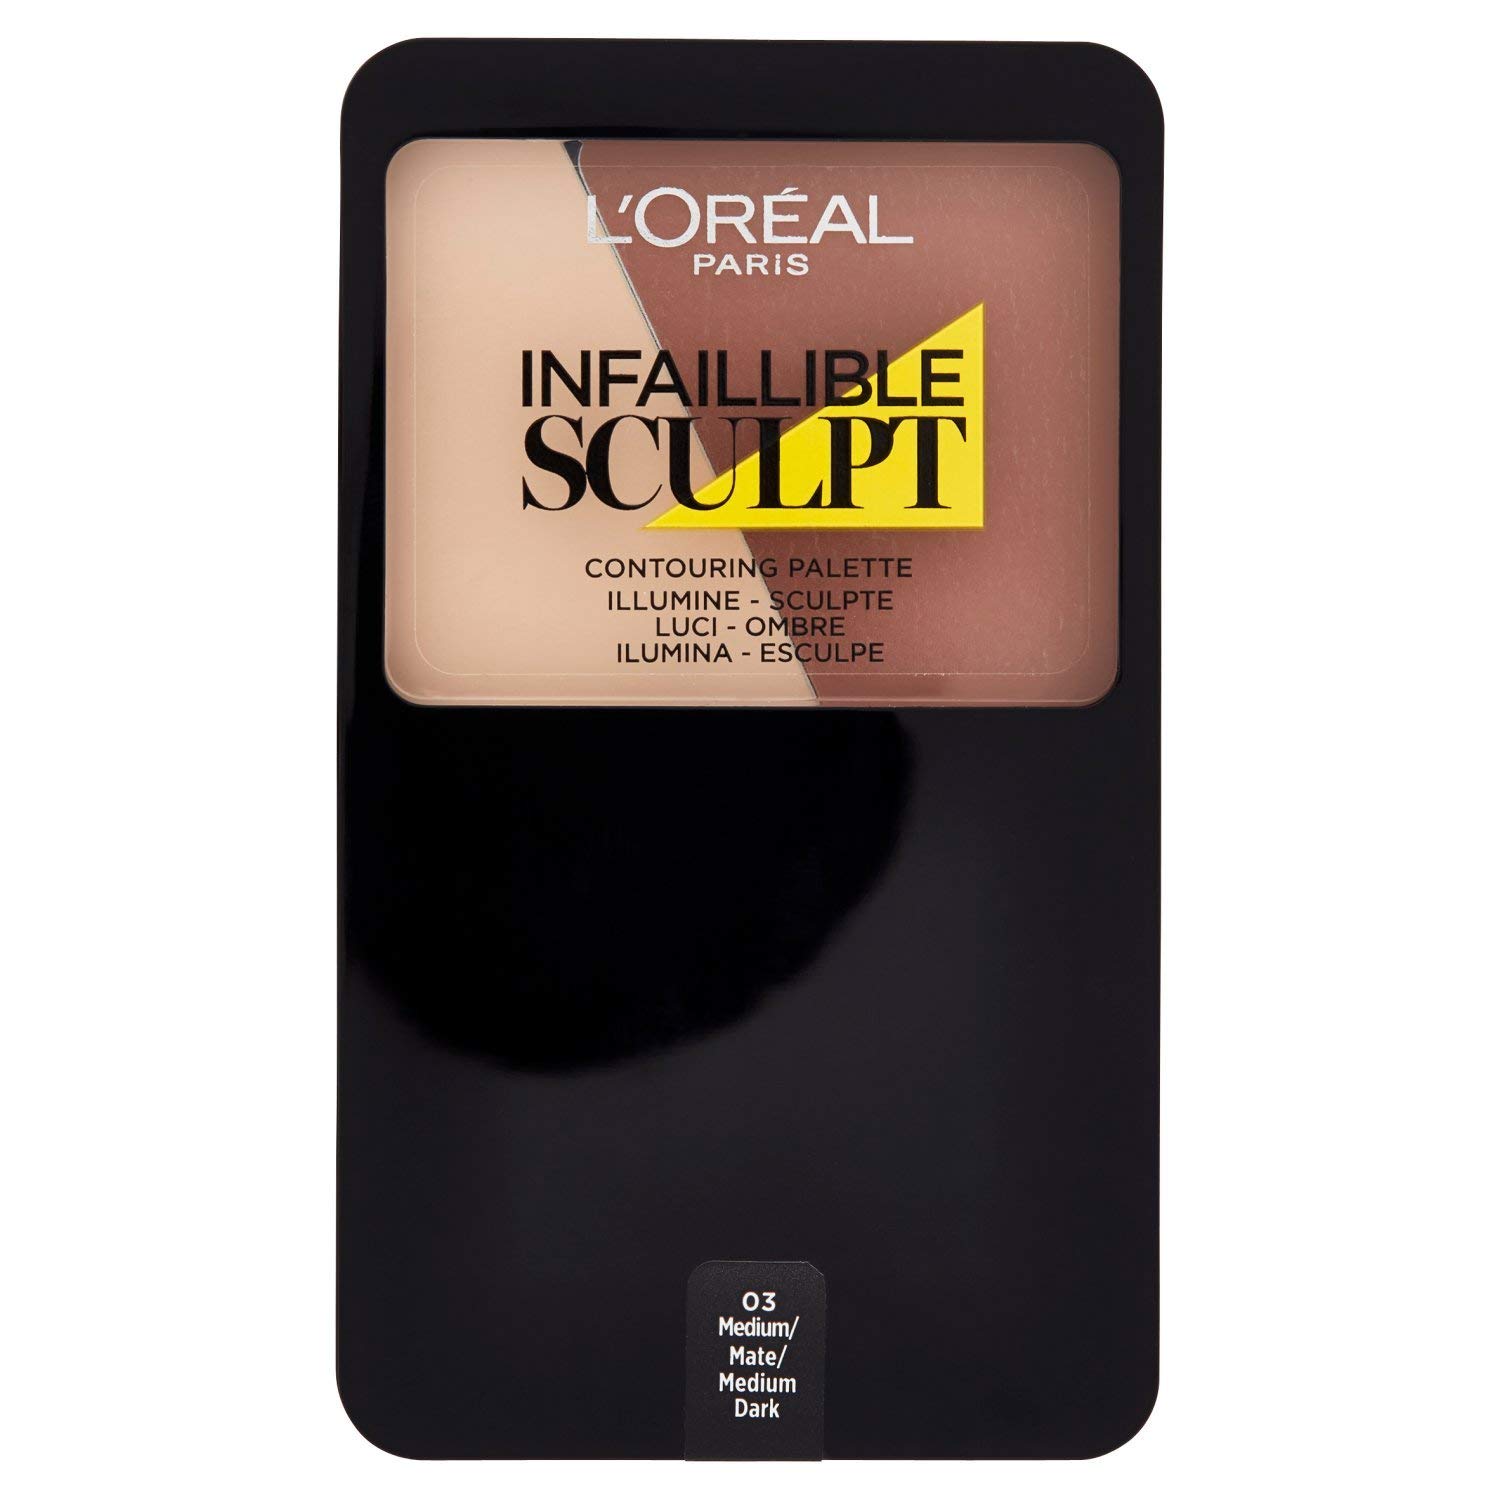 Paleta Infalible para pieles oscuras de L'Oréal Paris solo 3,29€